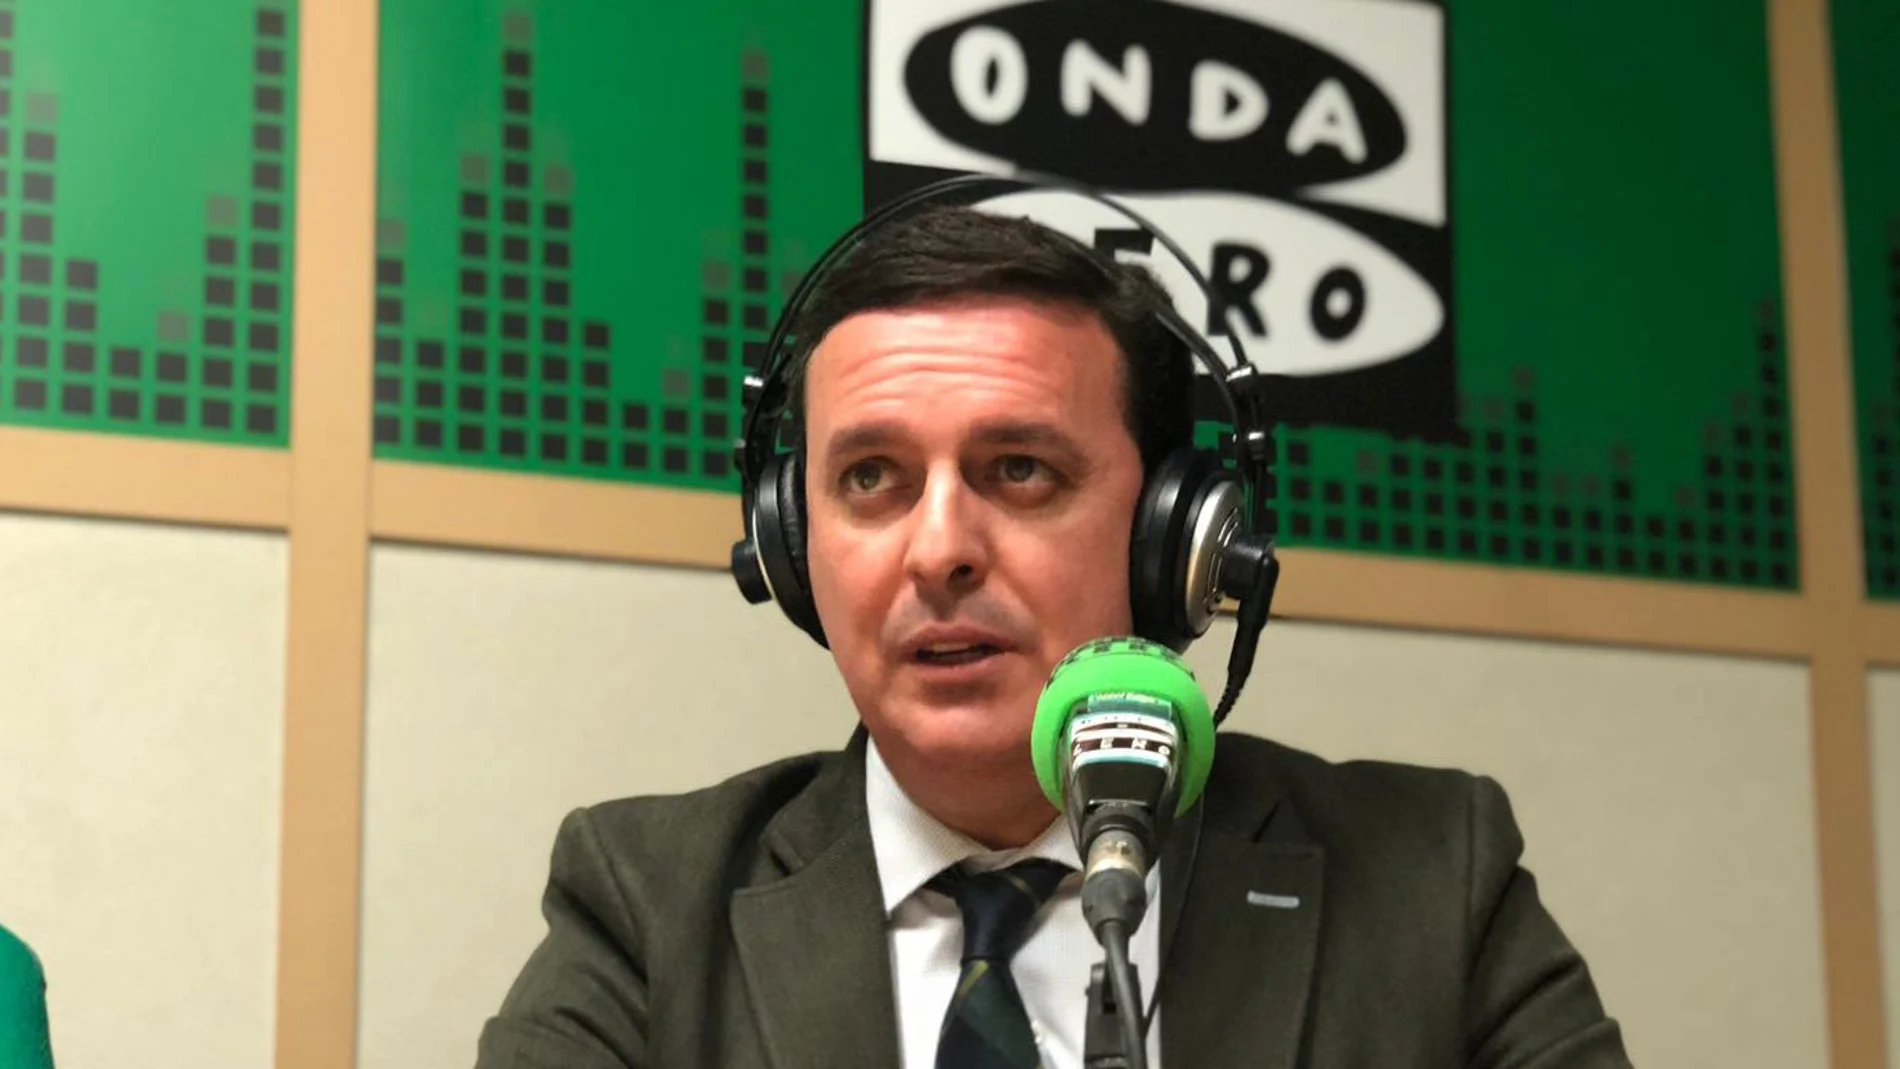 El presidente de la Diputación de Almería, Javier Aureliano García, ayer en los estudios de Onda Cero / Foto: La Razón